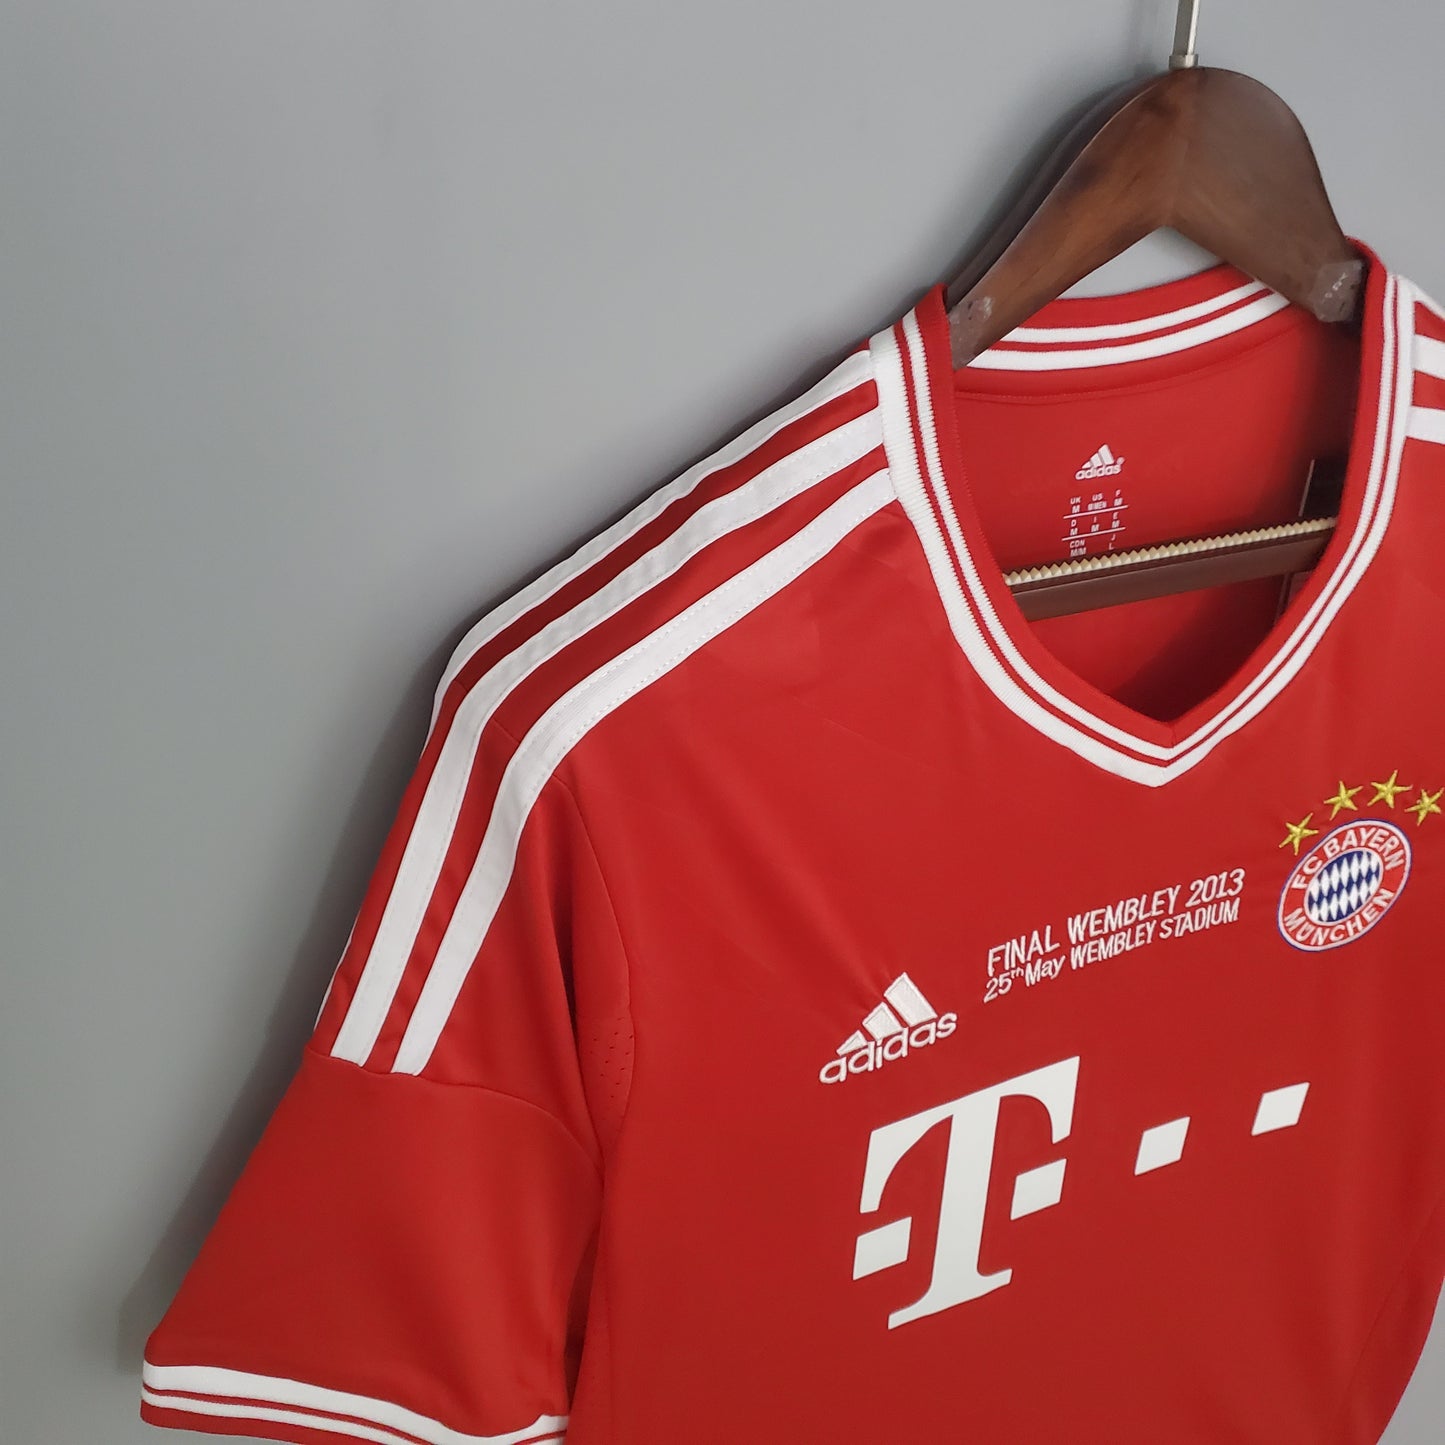 Retro Bayern Munich 13/14 Champions Edition Kit